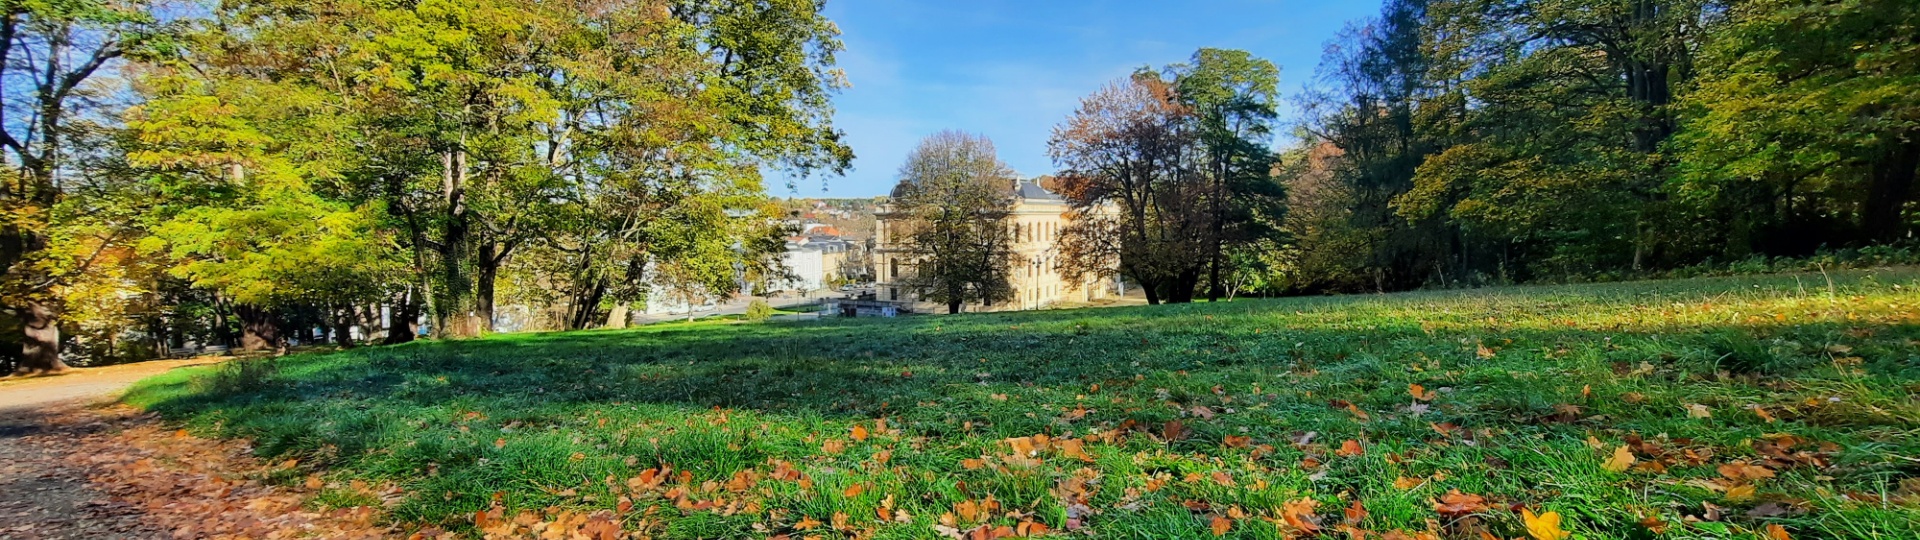 Altenburger Schlosspark mit Blick auf das Lindenau-Museum